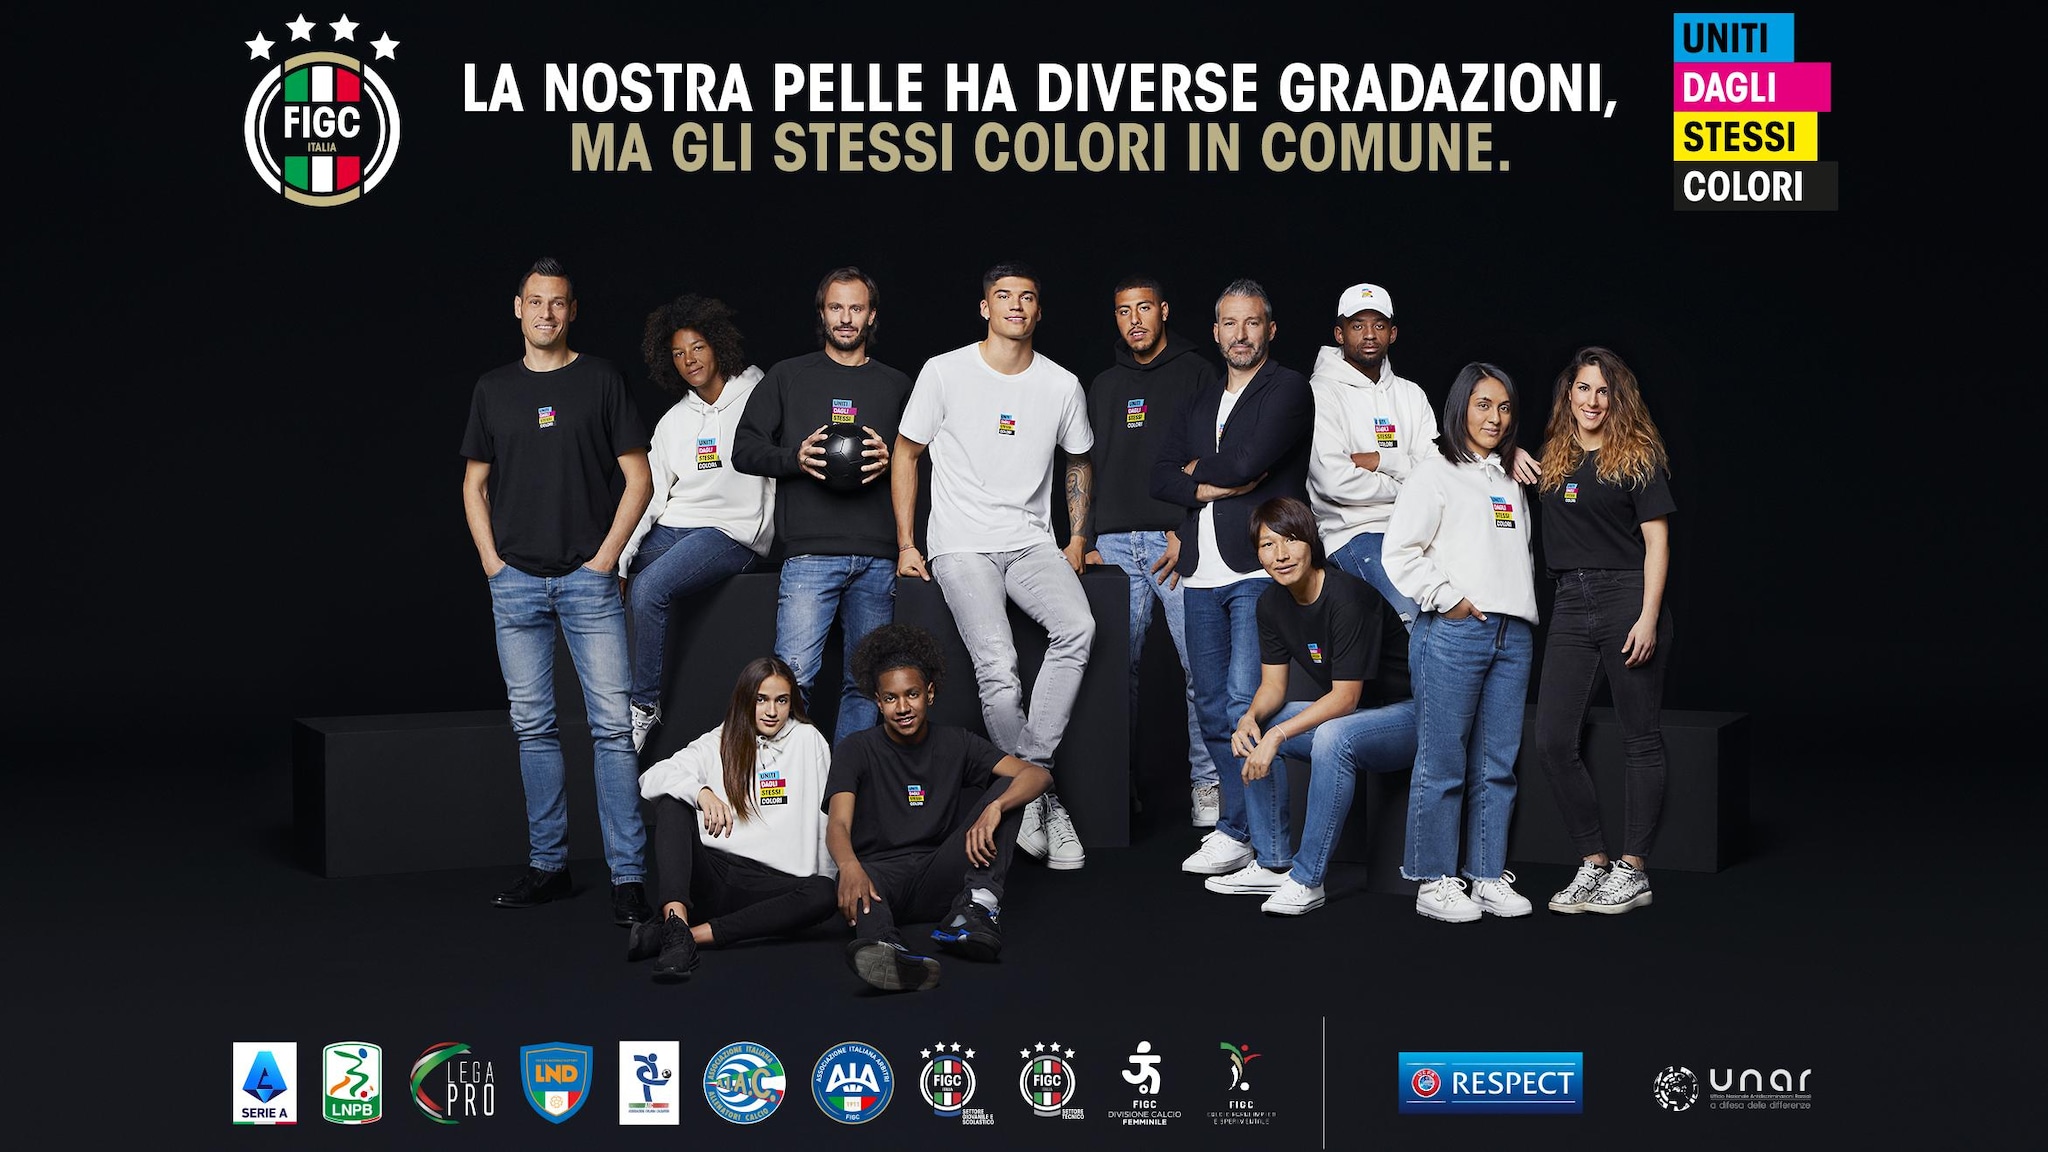 Italia: Uniti dagli stessi colori |  Dentro l’UEFA